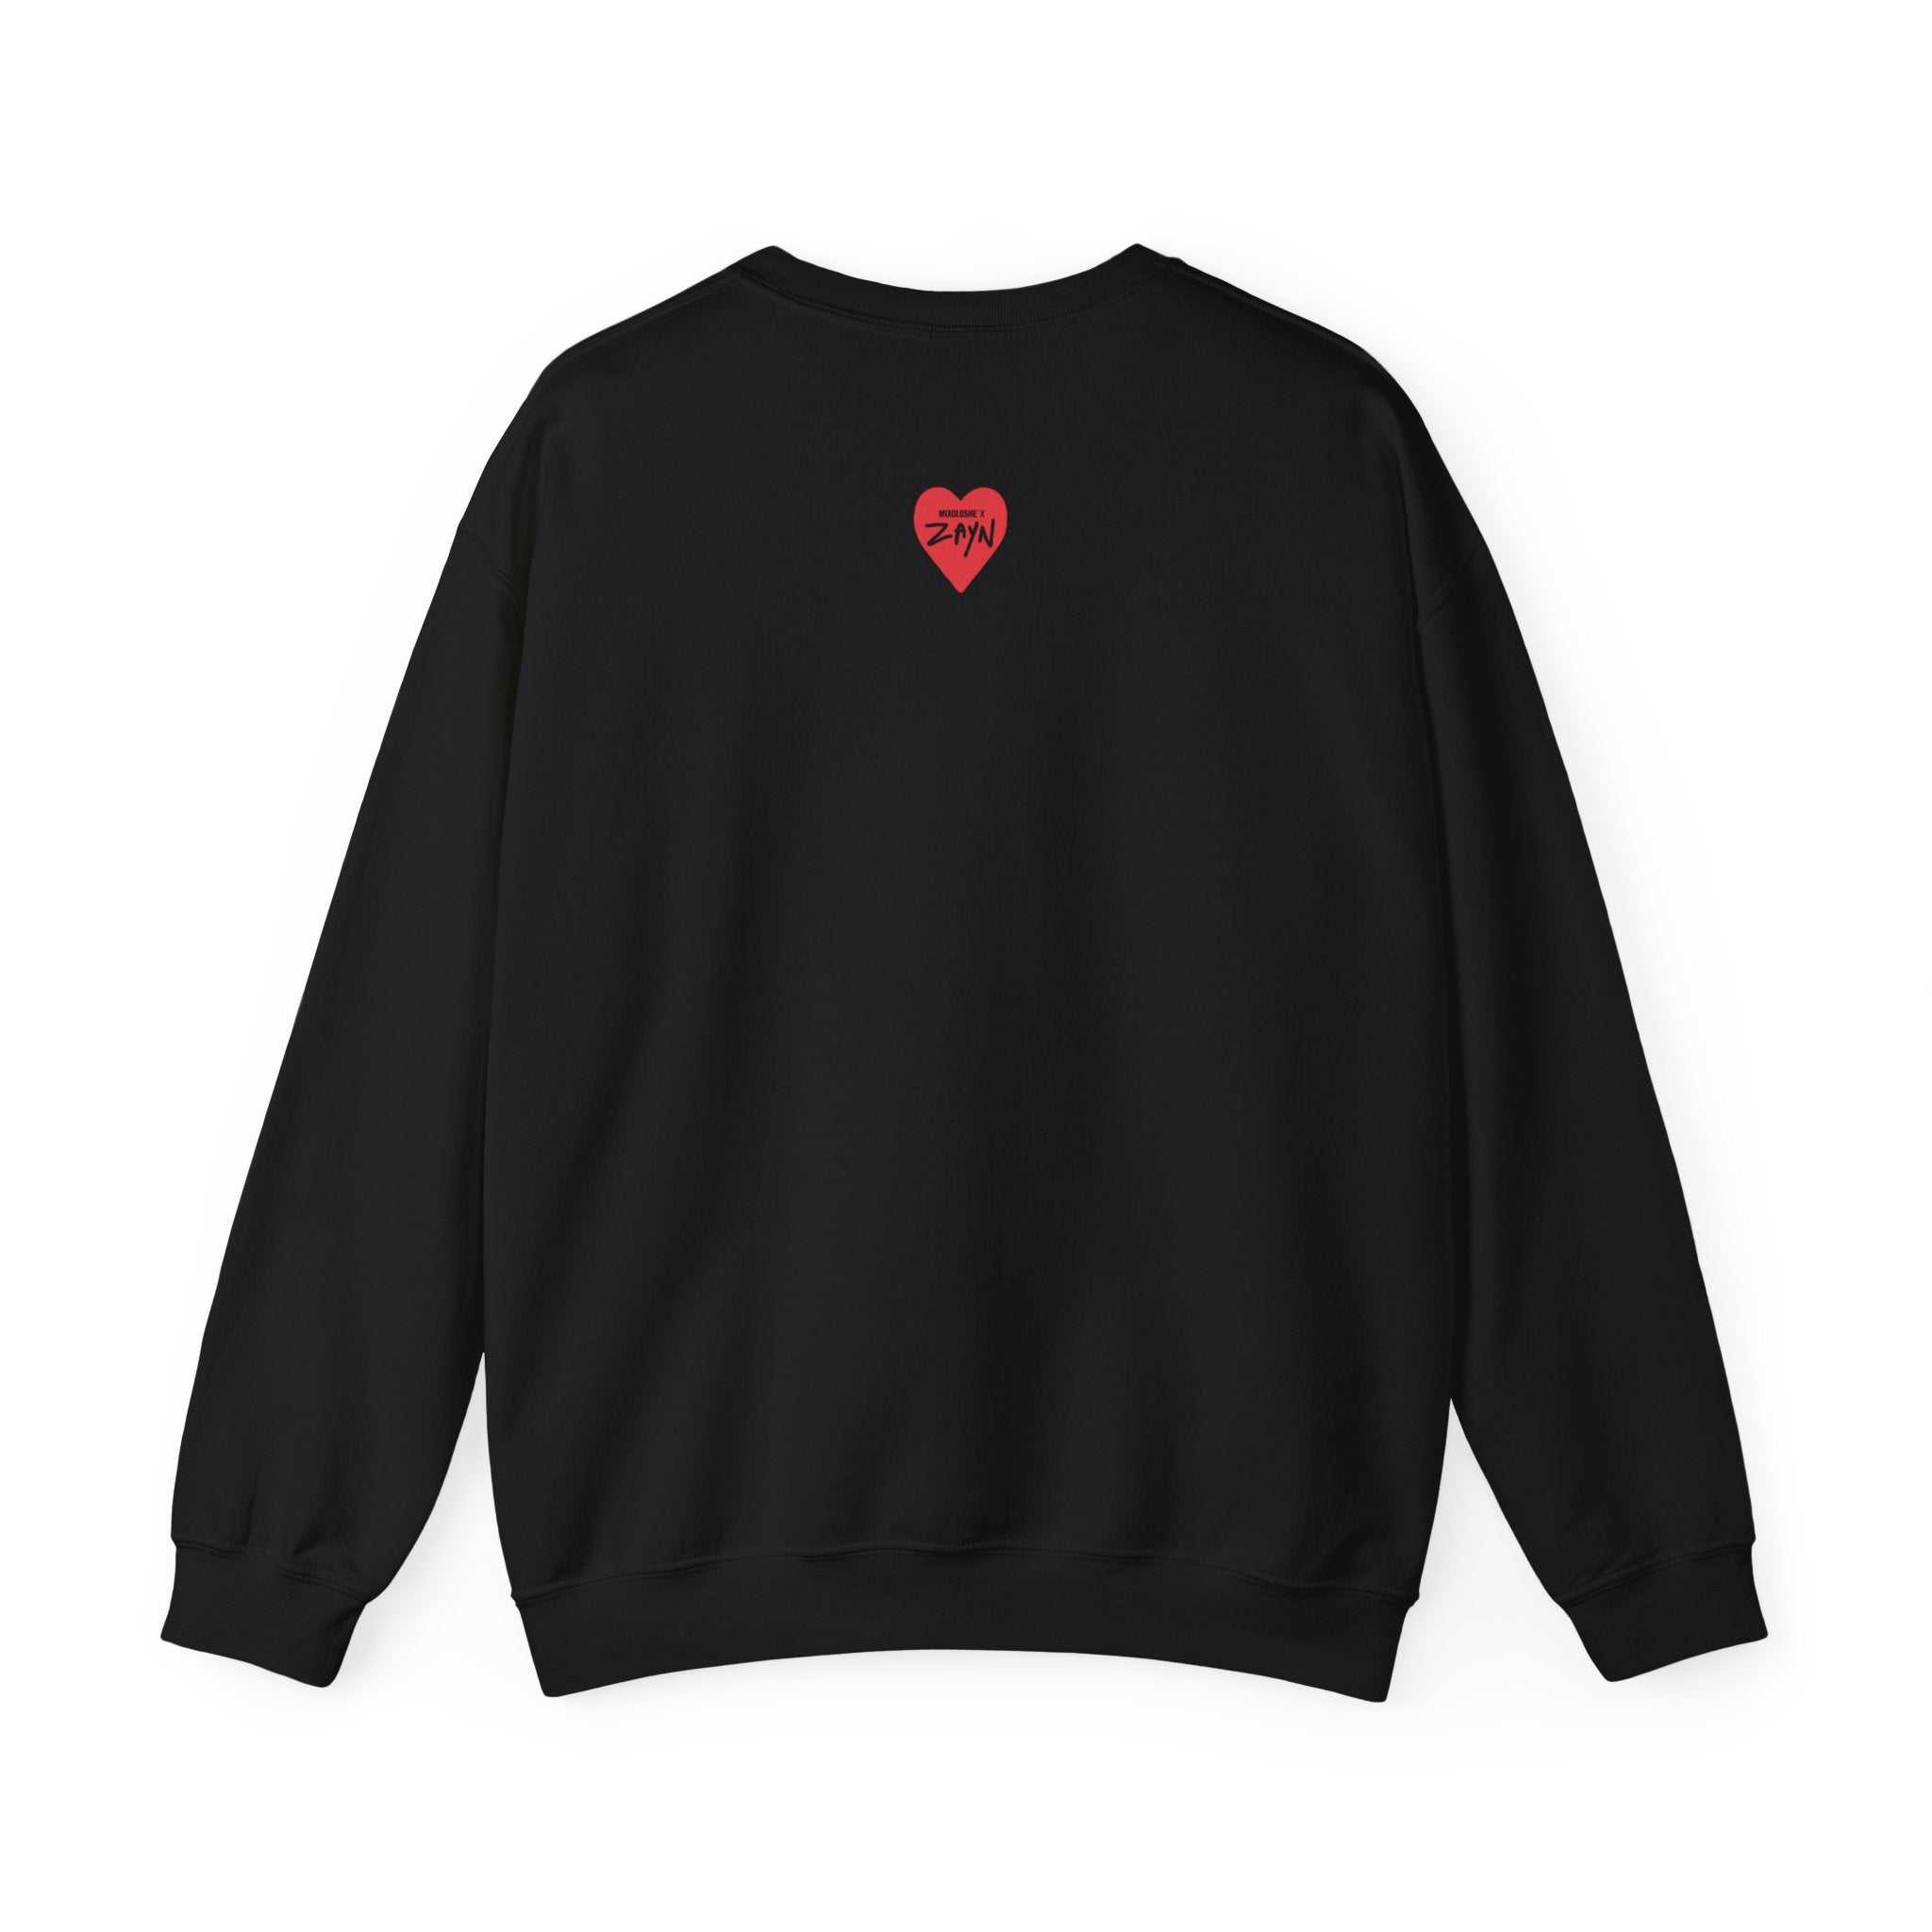 Zayn 'Taste the Love' Sweater